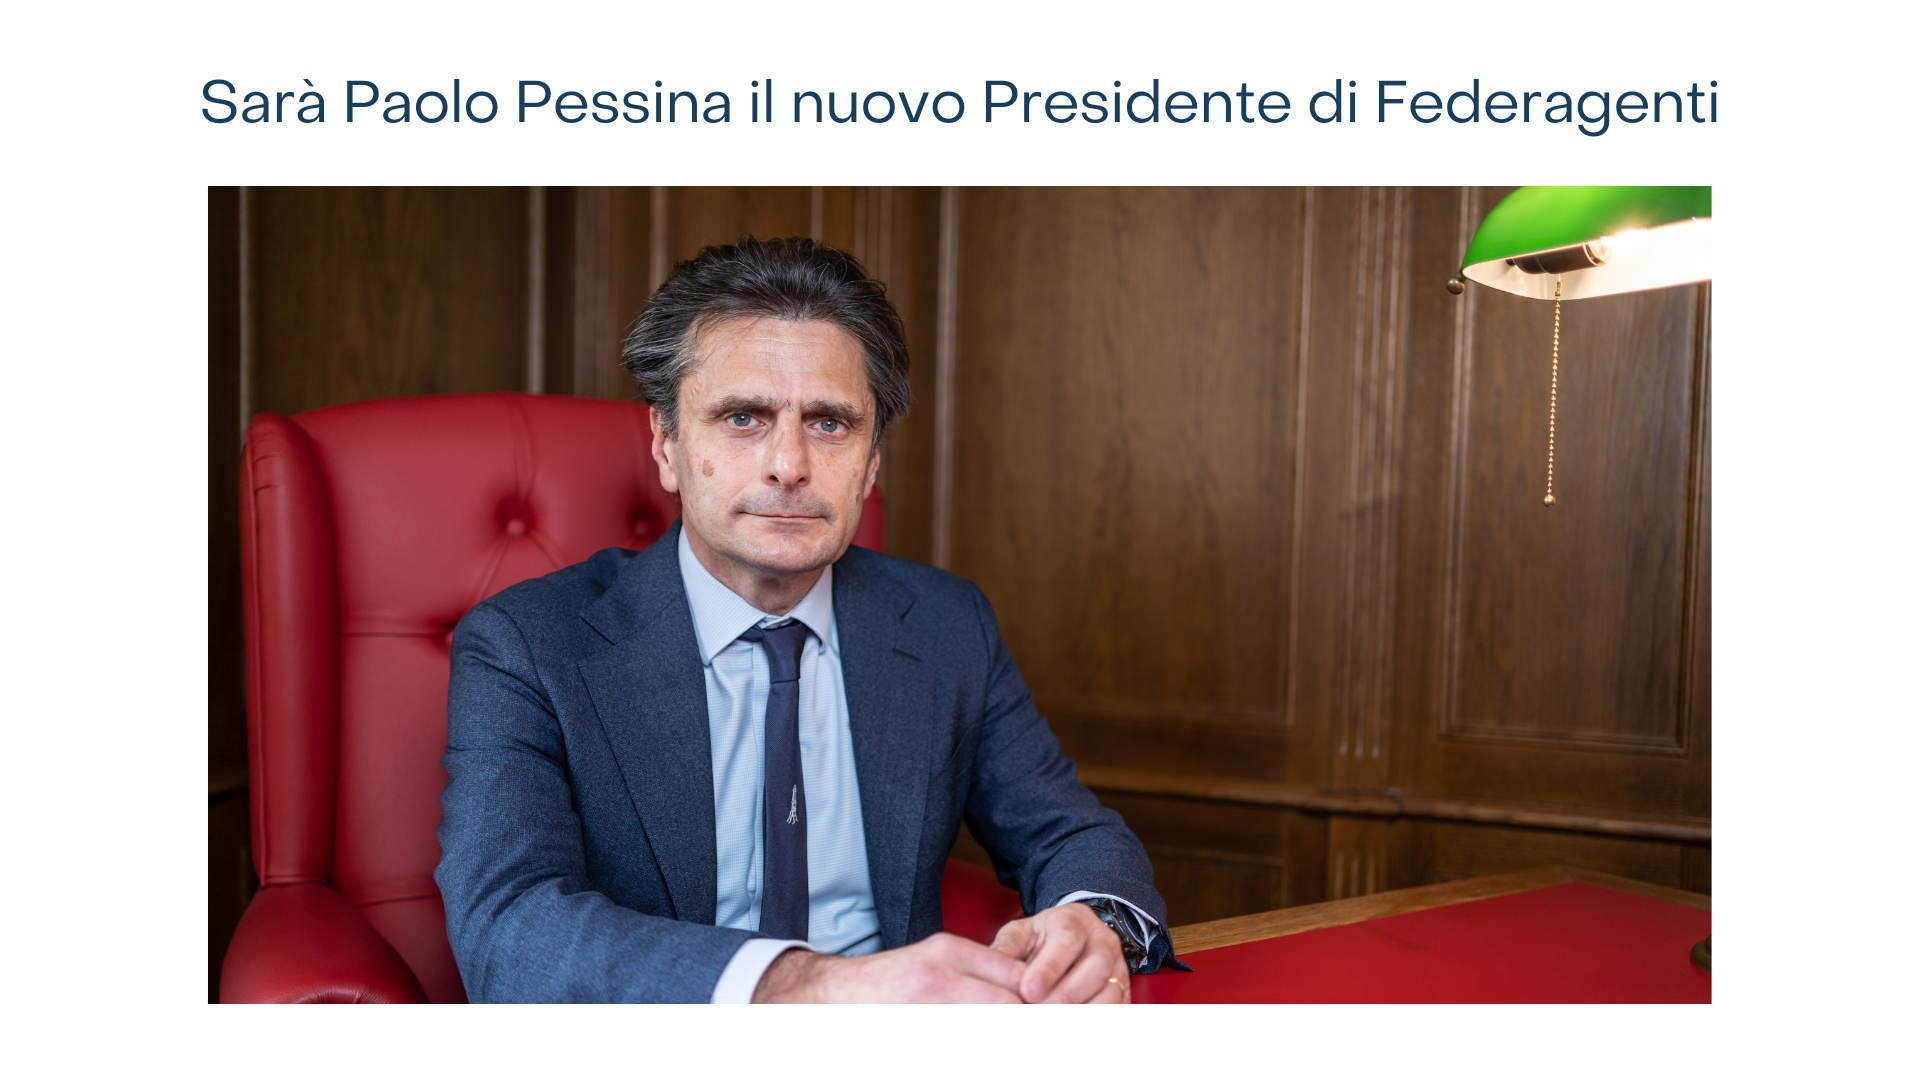 Federagenti -  Il nuovo Presidente sarà Paolo Pessina